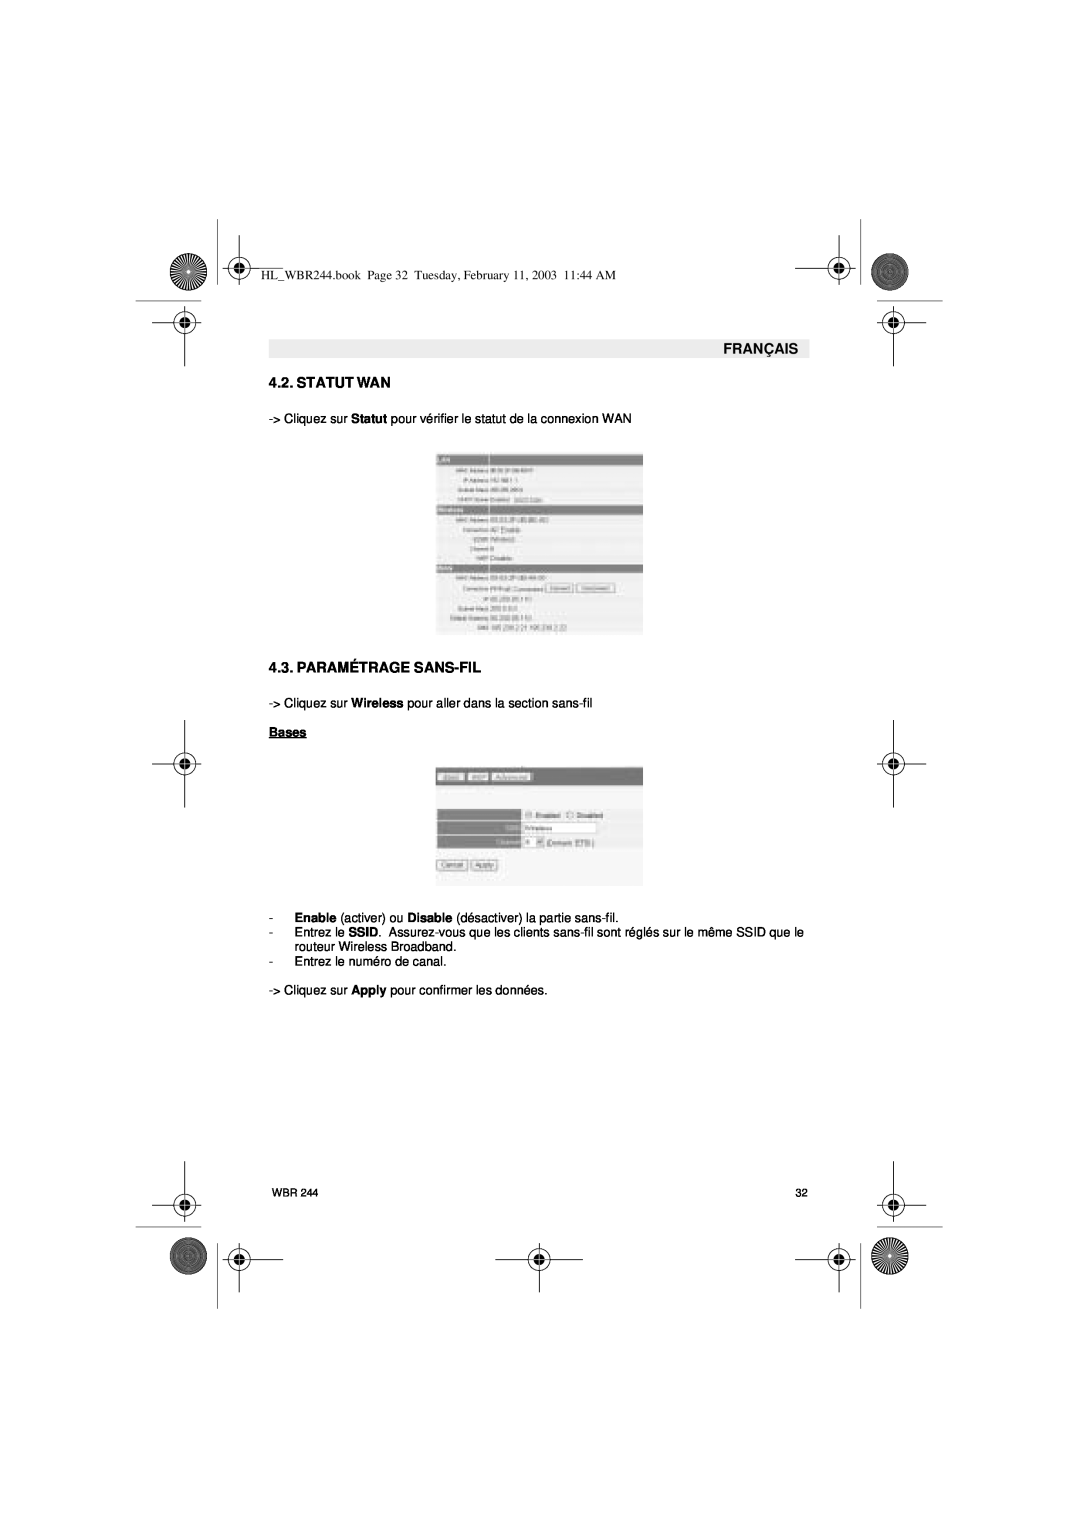 Topcom WBR 244 manual FRANÇAIS 4.2. STATUT WAN, Paramétrage Sans-Fil, Bases 